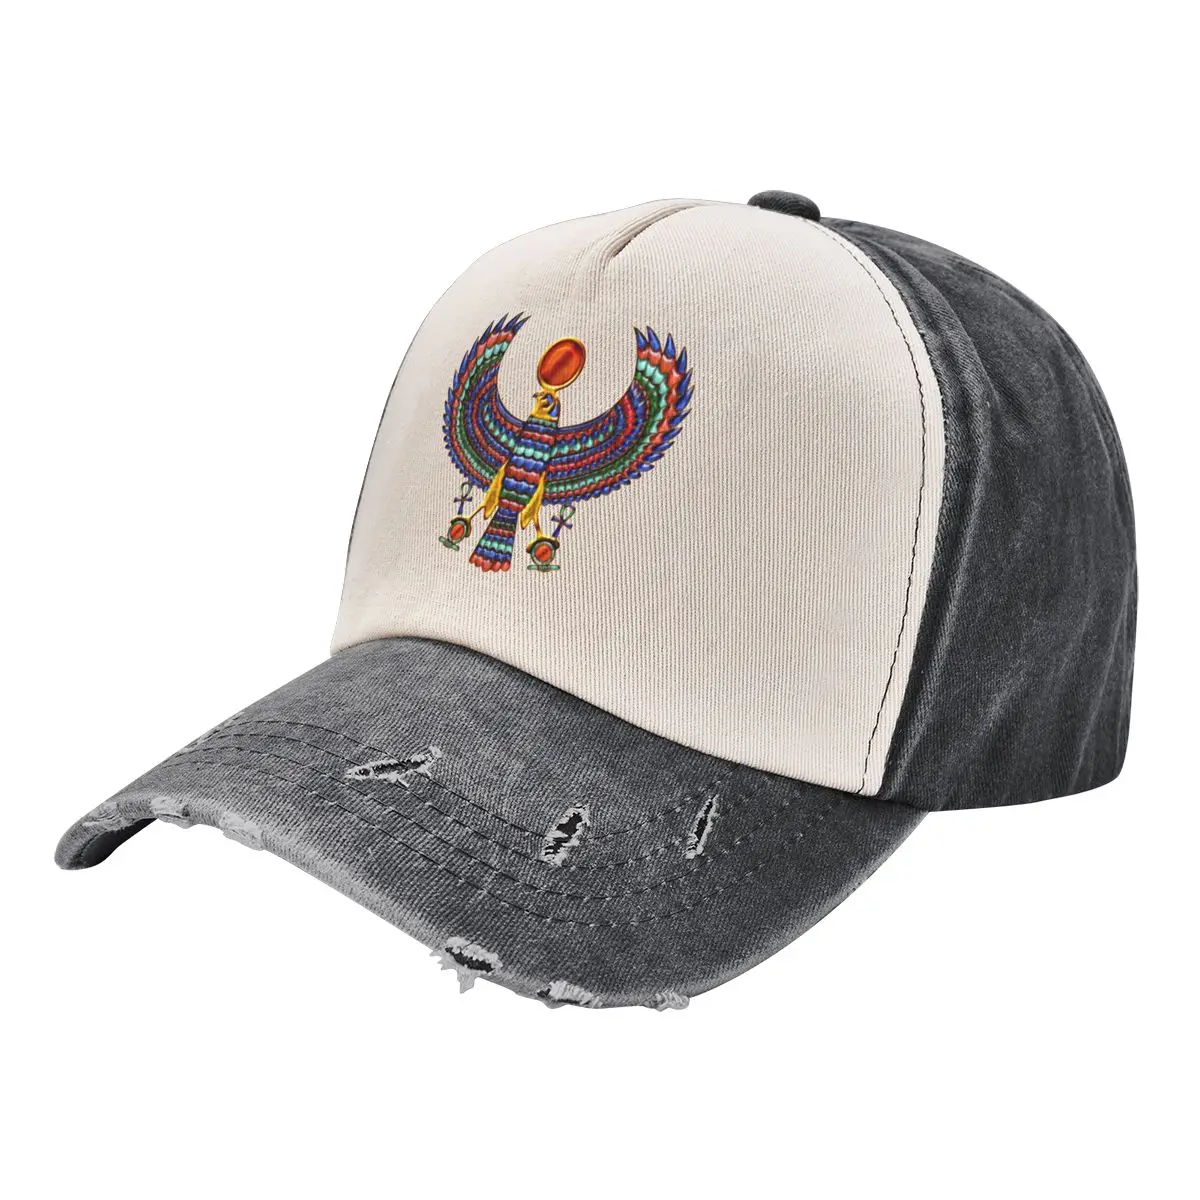 

Шляпа в стиле древнего египетского Бога хора (футболка), мужская Ковбойская шляпа, роскошная брендовая шляпа джентльмена, шляпа для гольфа, мужская шляпа для гольфа для женщин и мужчин